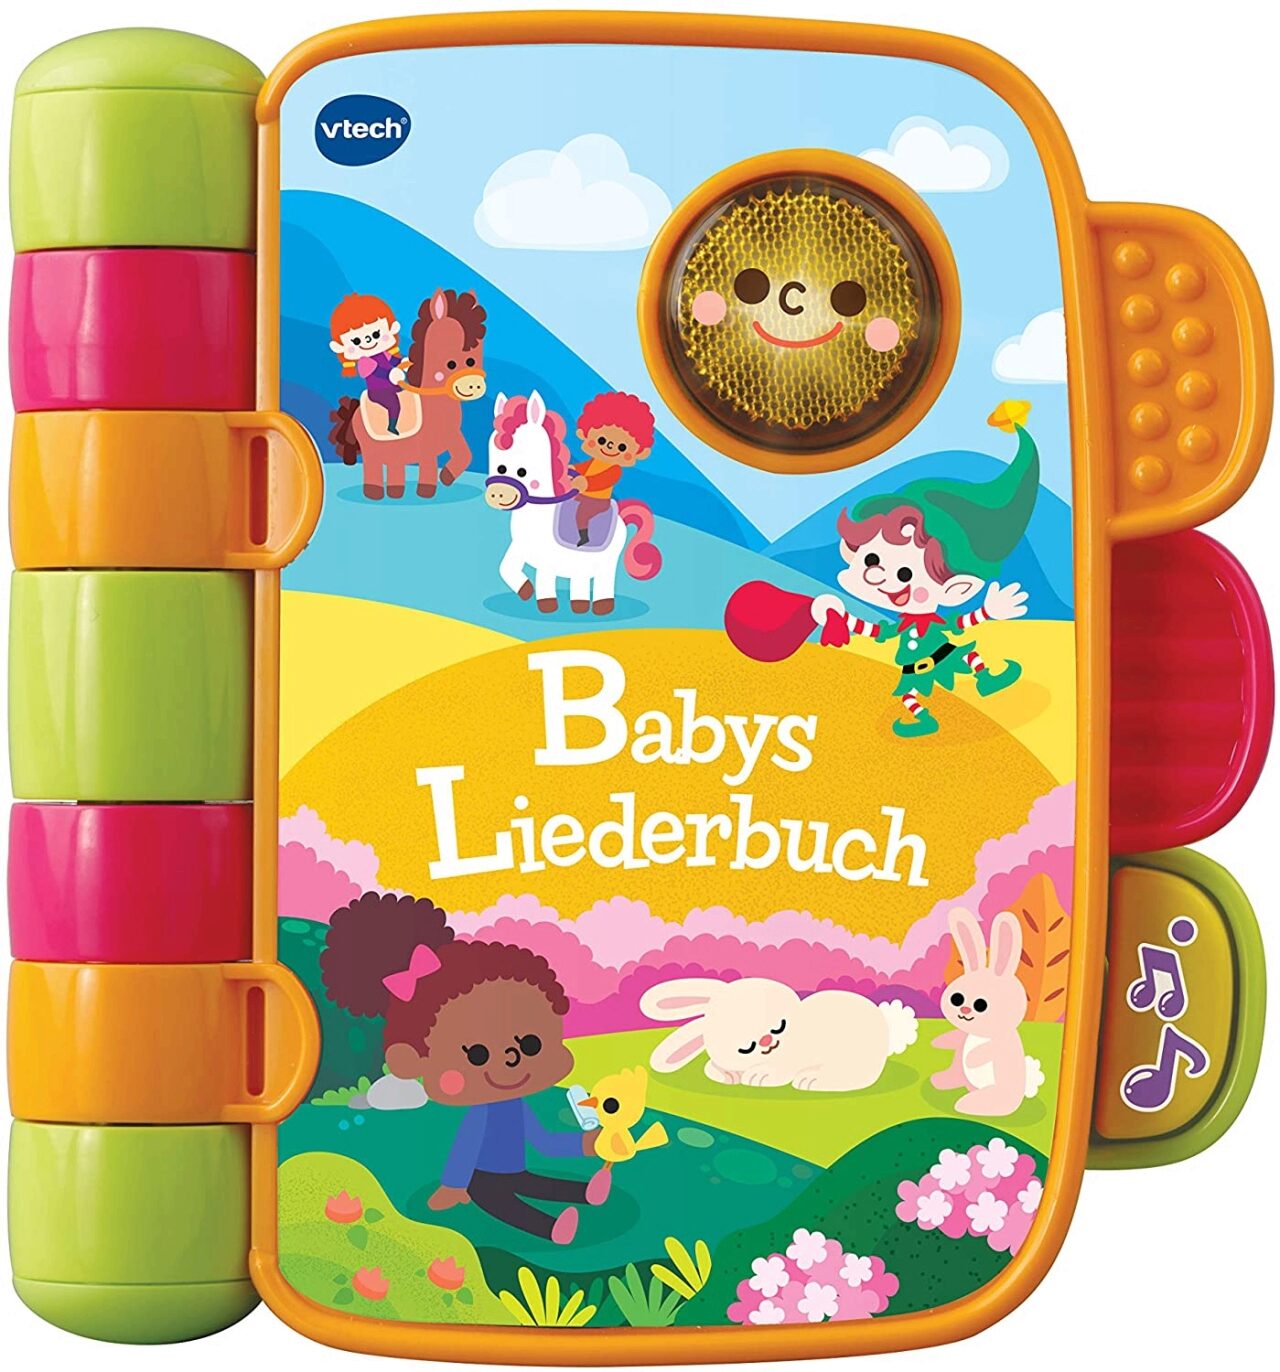 Babys 80-138364 Liederbuch VTECH